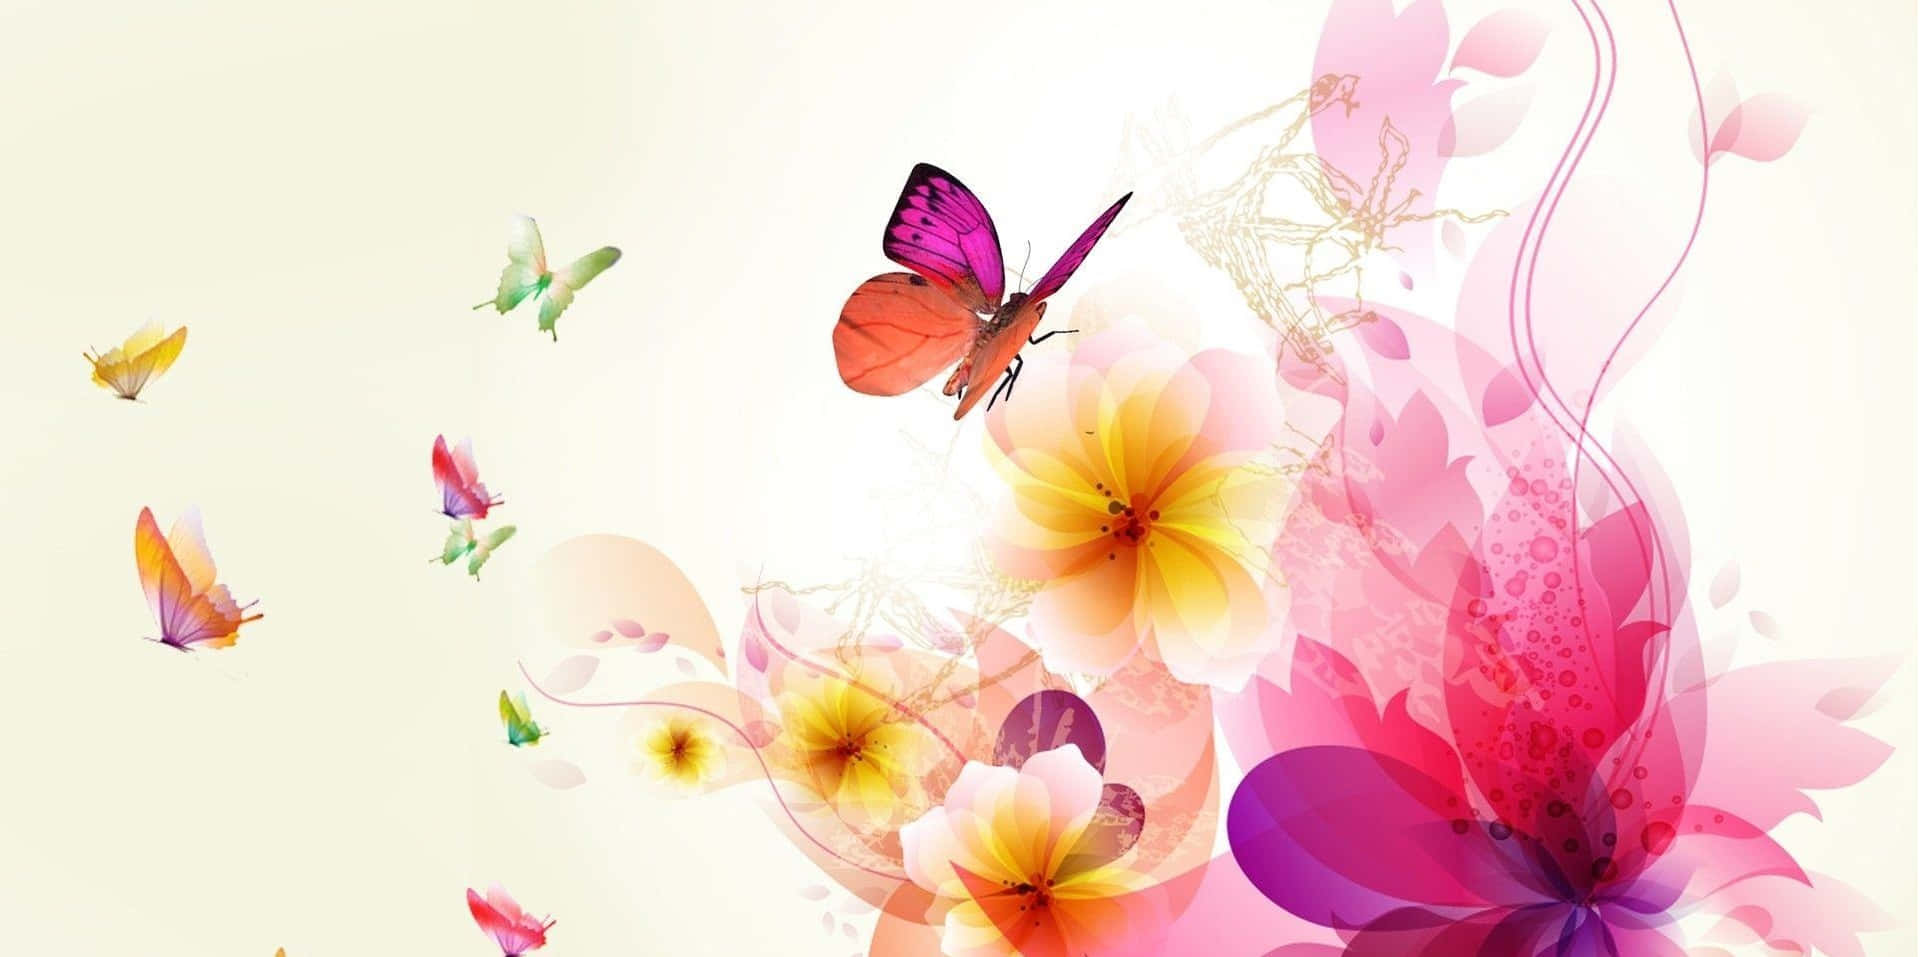 Abstract Butterflies Floral Artwork Wallpaper